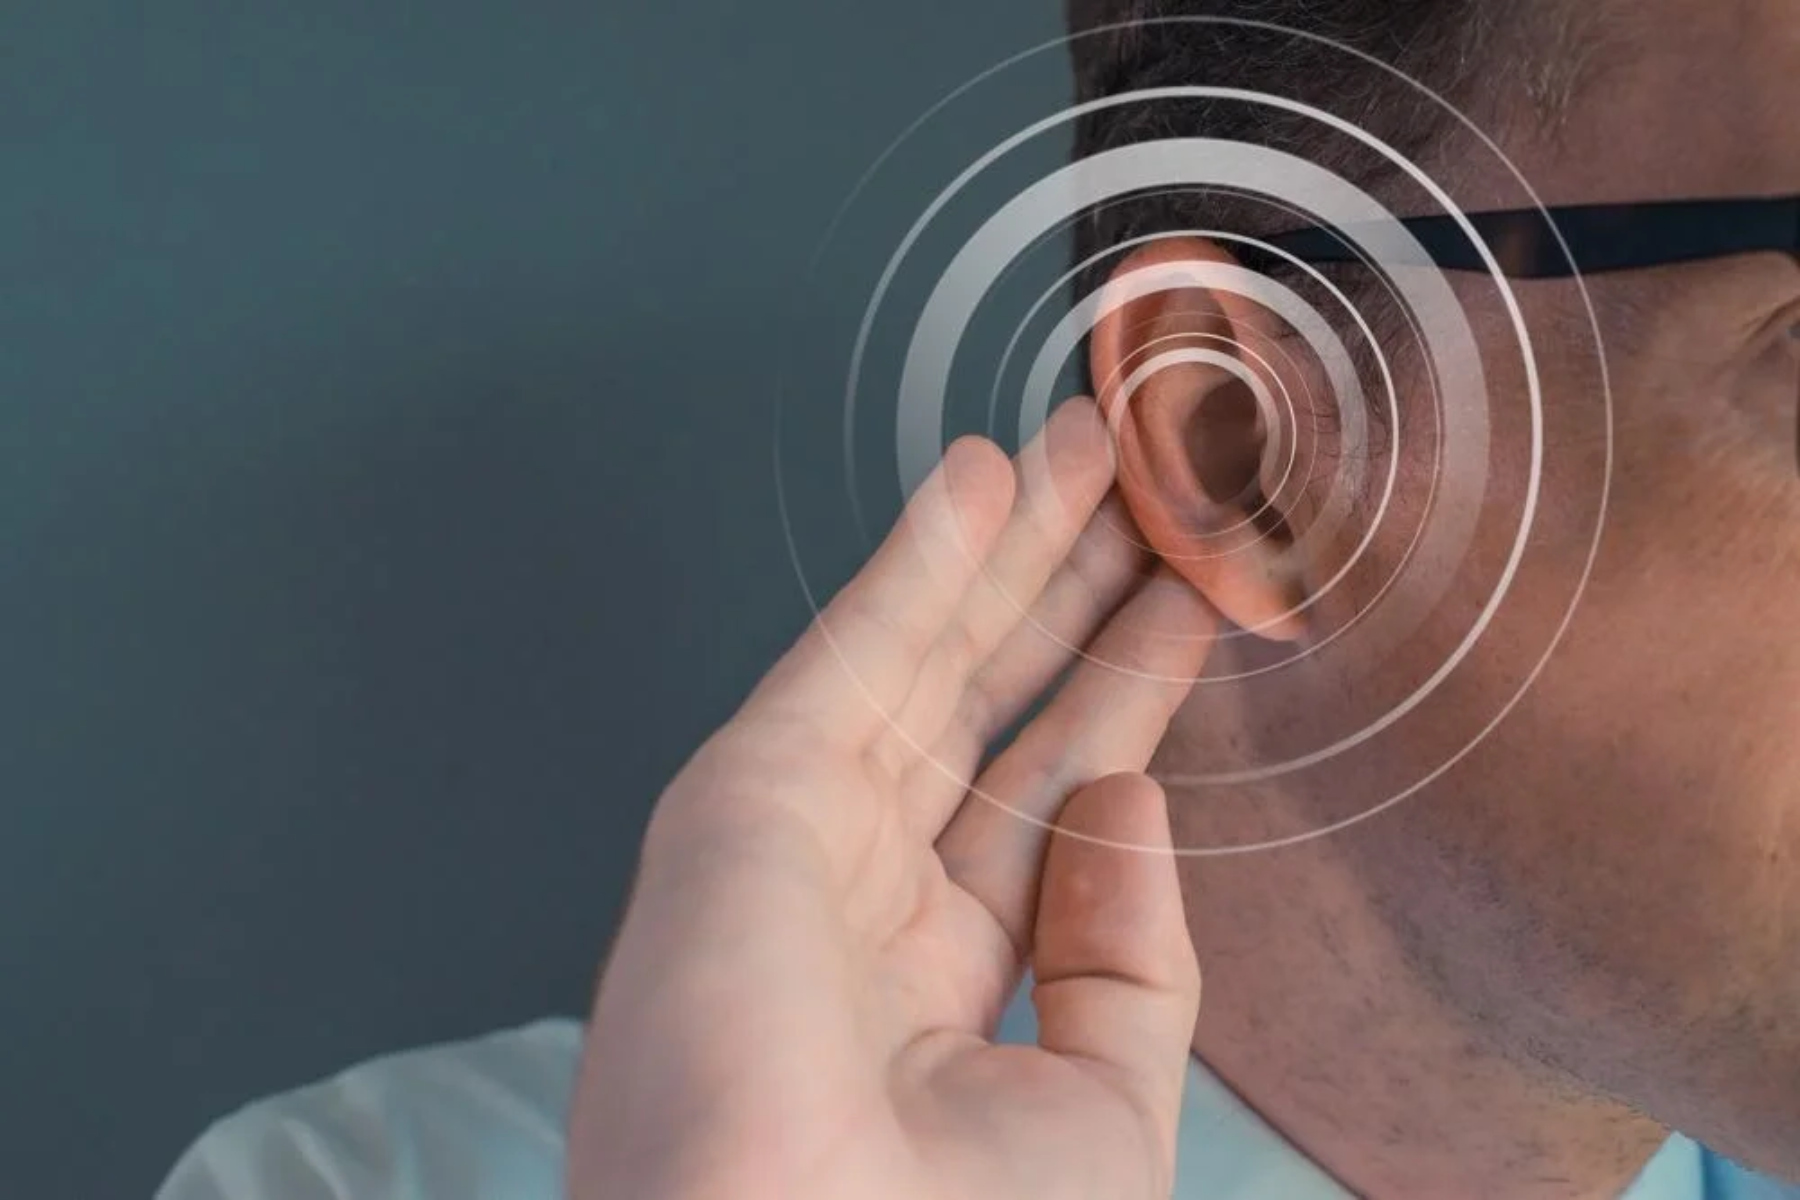 Απώλεια ακοής: Μπορεί να βελτιωθεί η ακοή με τη χρήση της τεχνολογίας;